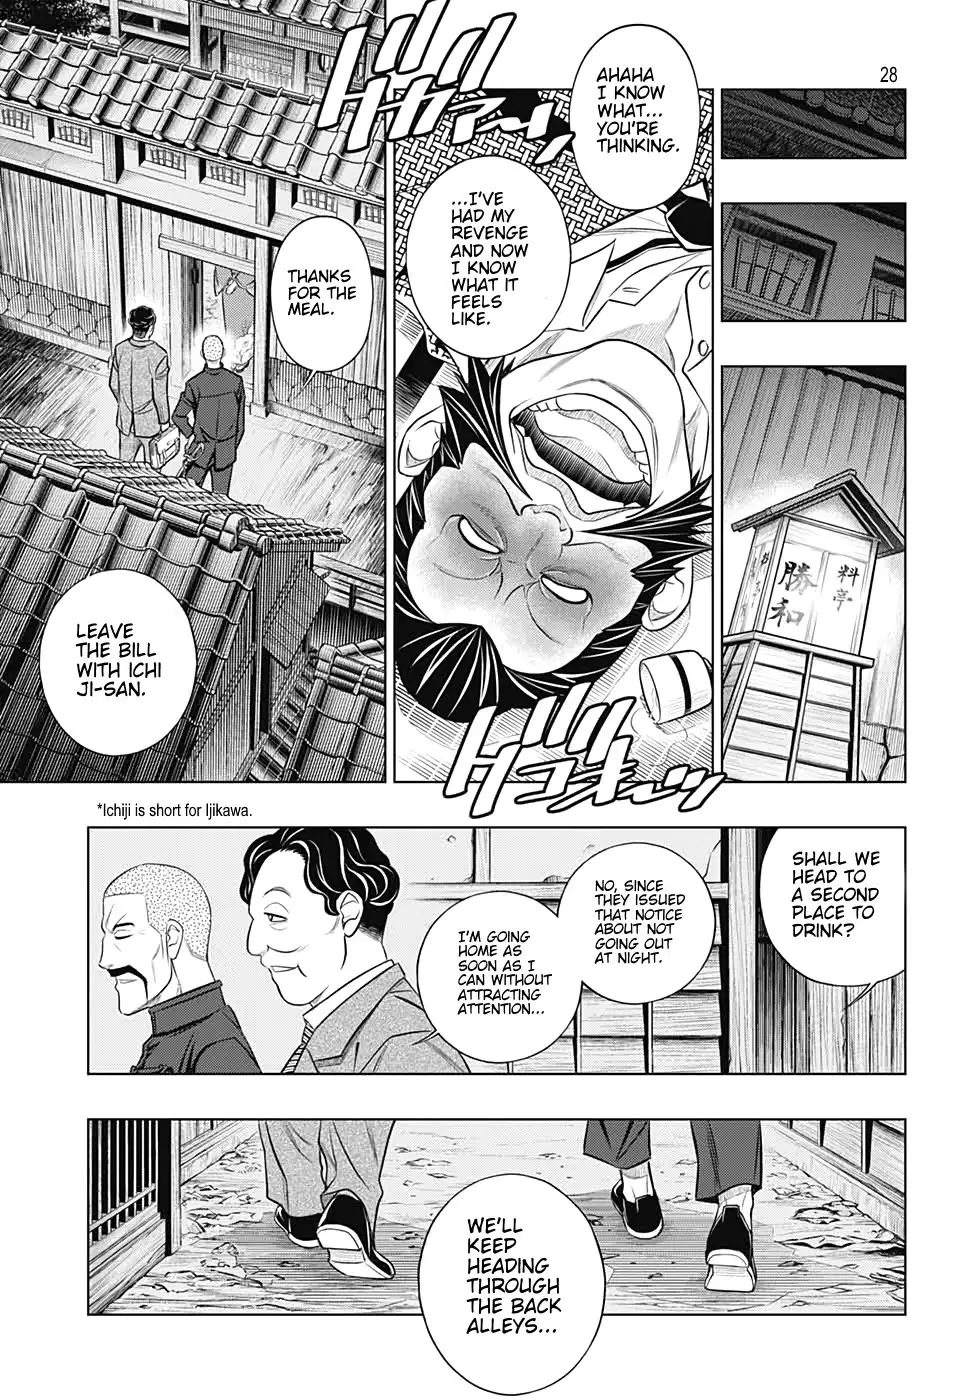 Rurouni Kenshin: Hokkaido Arc - 37 page 28